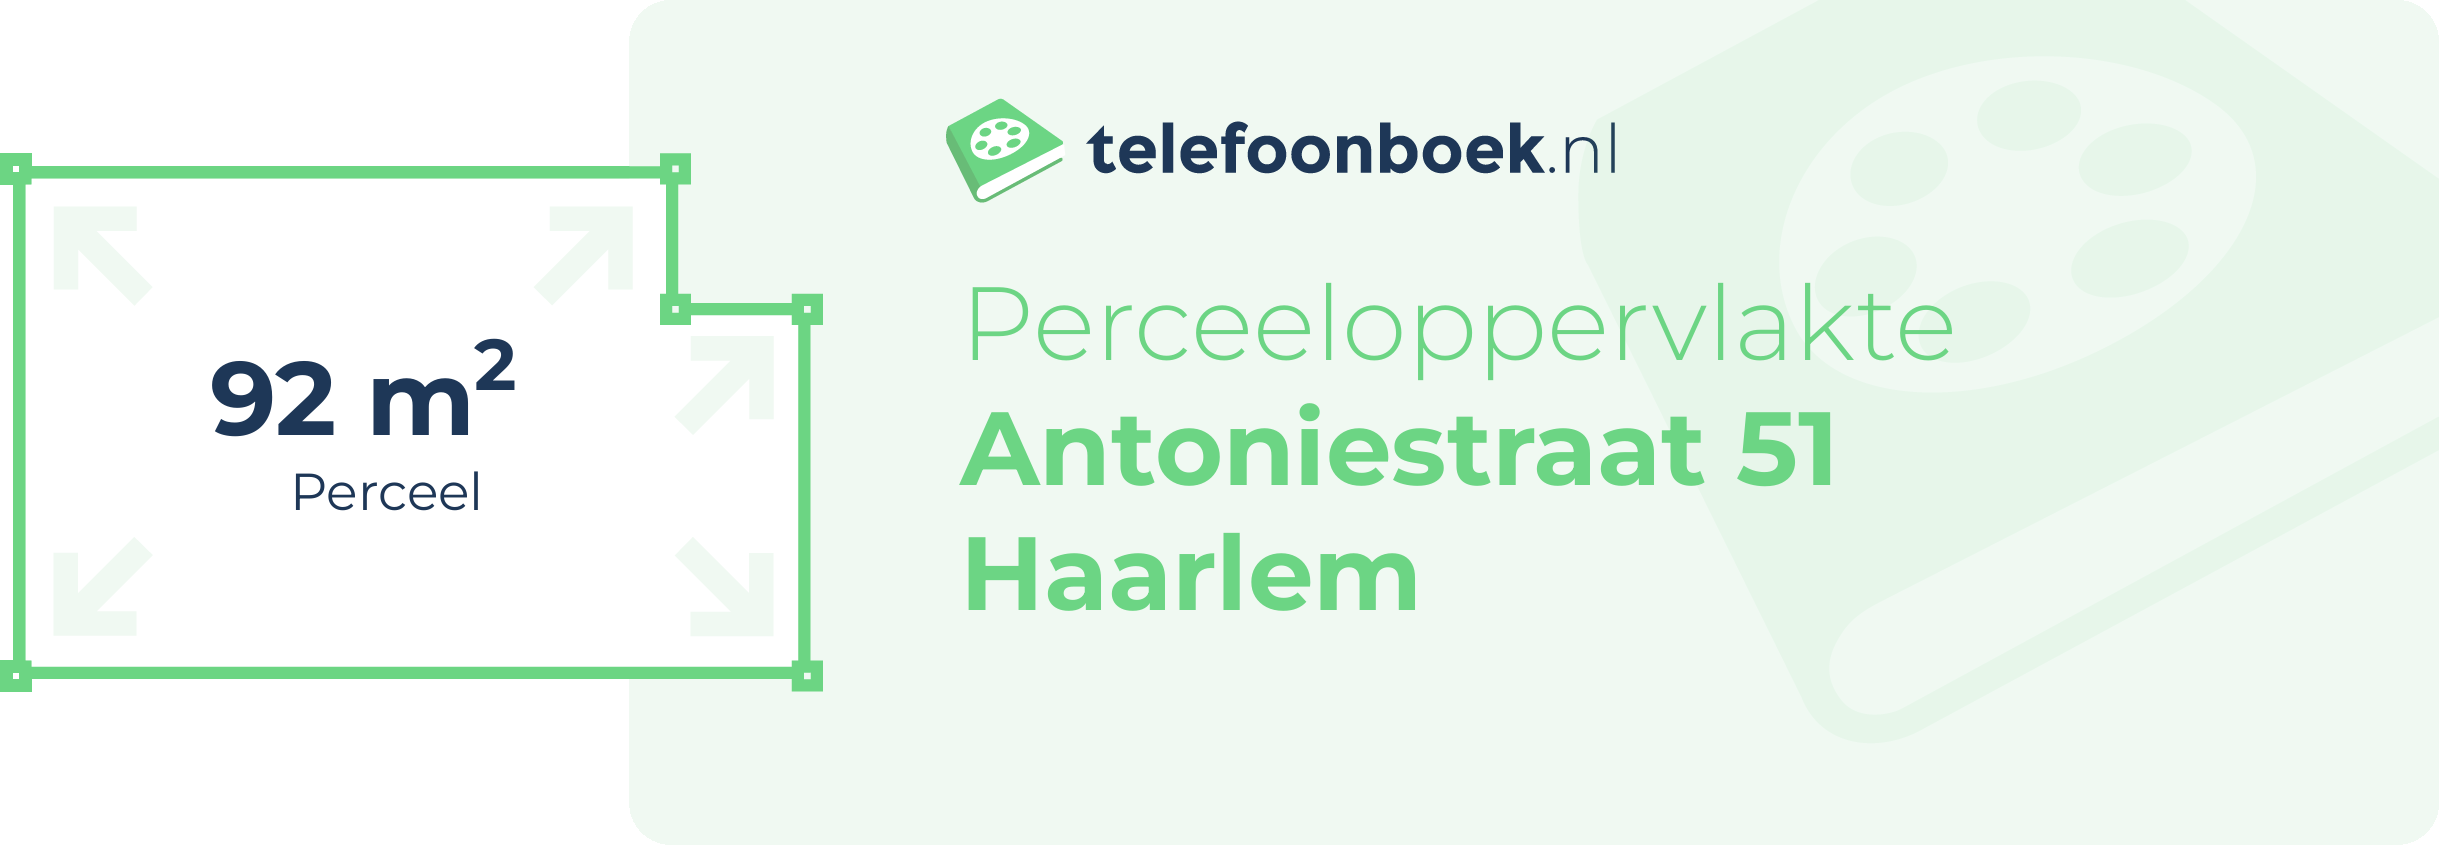 Perceeloppervlakte Antoniestraat 51 Haarlem